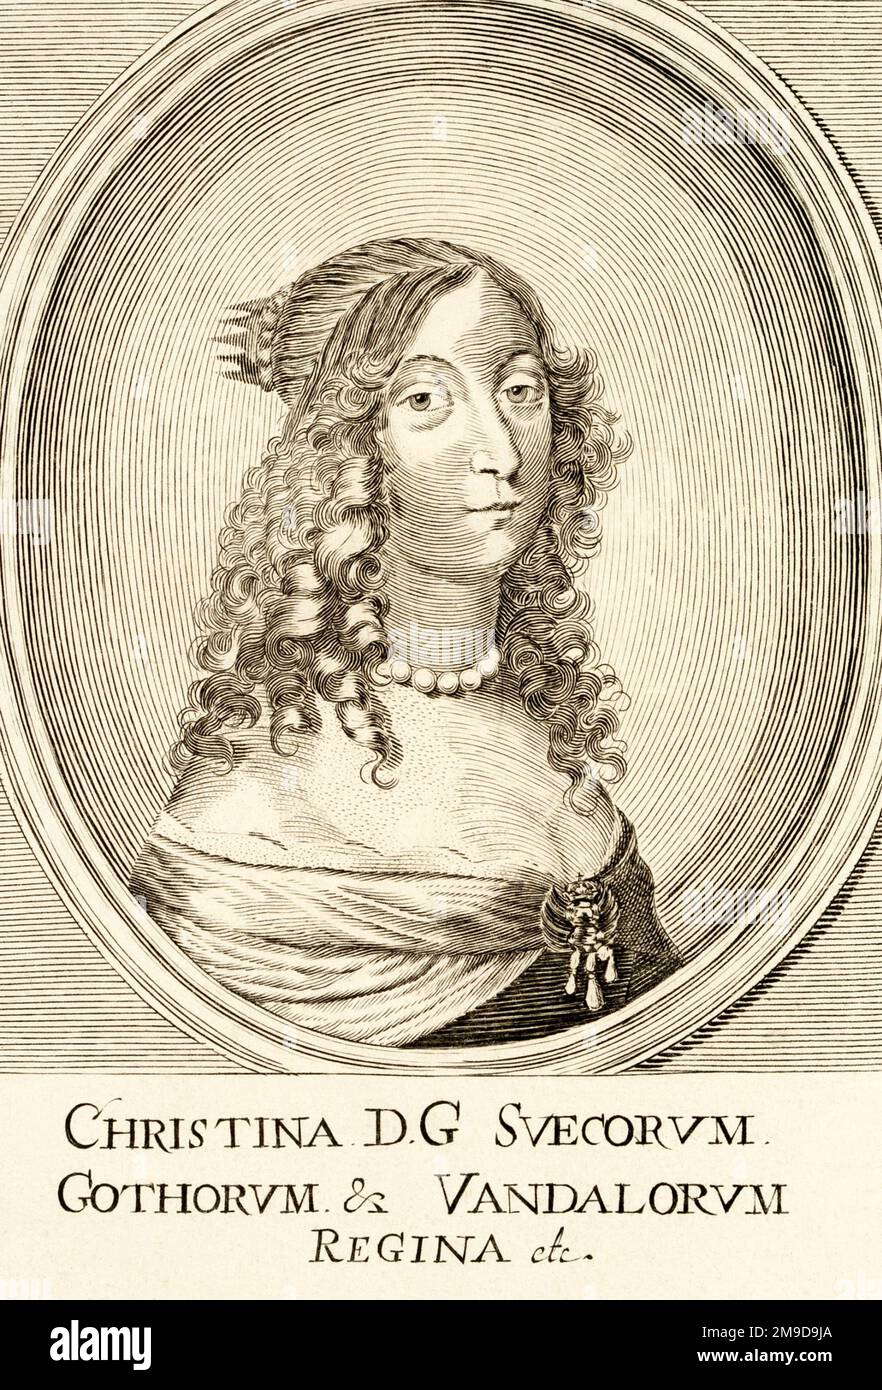 1660 ca, SVEZIA : la celebrata regina svedese CHRISTINA di Svezia ( 1626 - 1689 ), figlia del re GUSTAV ADOLF ( Adolfo , 1594 - 1632 ) della dinastia VASA . Incisore sconosciuto . - REGINA CRISTINA di SVEZIA - Gustavo Adolfo - Gustavus Adolphus - Christine - FOTO STORICHE - STORIA - NORVEGIA - NORVEGIA - royalty - nobili - nobiltà - ritratto - incisione - illustrazione - illustrazione - LGBTQ - GAY - Lesbica - collana perla - collana di perle --- ARCHIVIO GBB Foto Stock